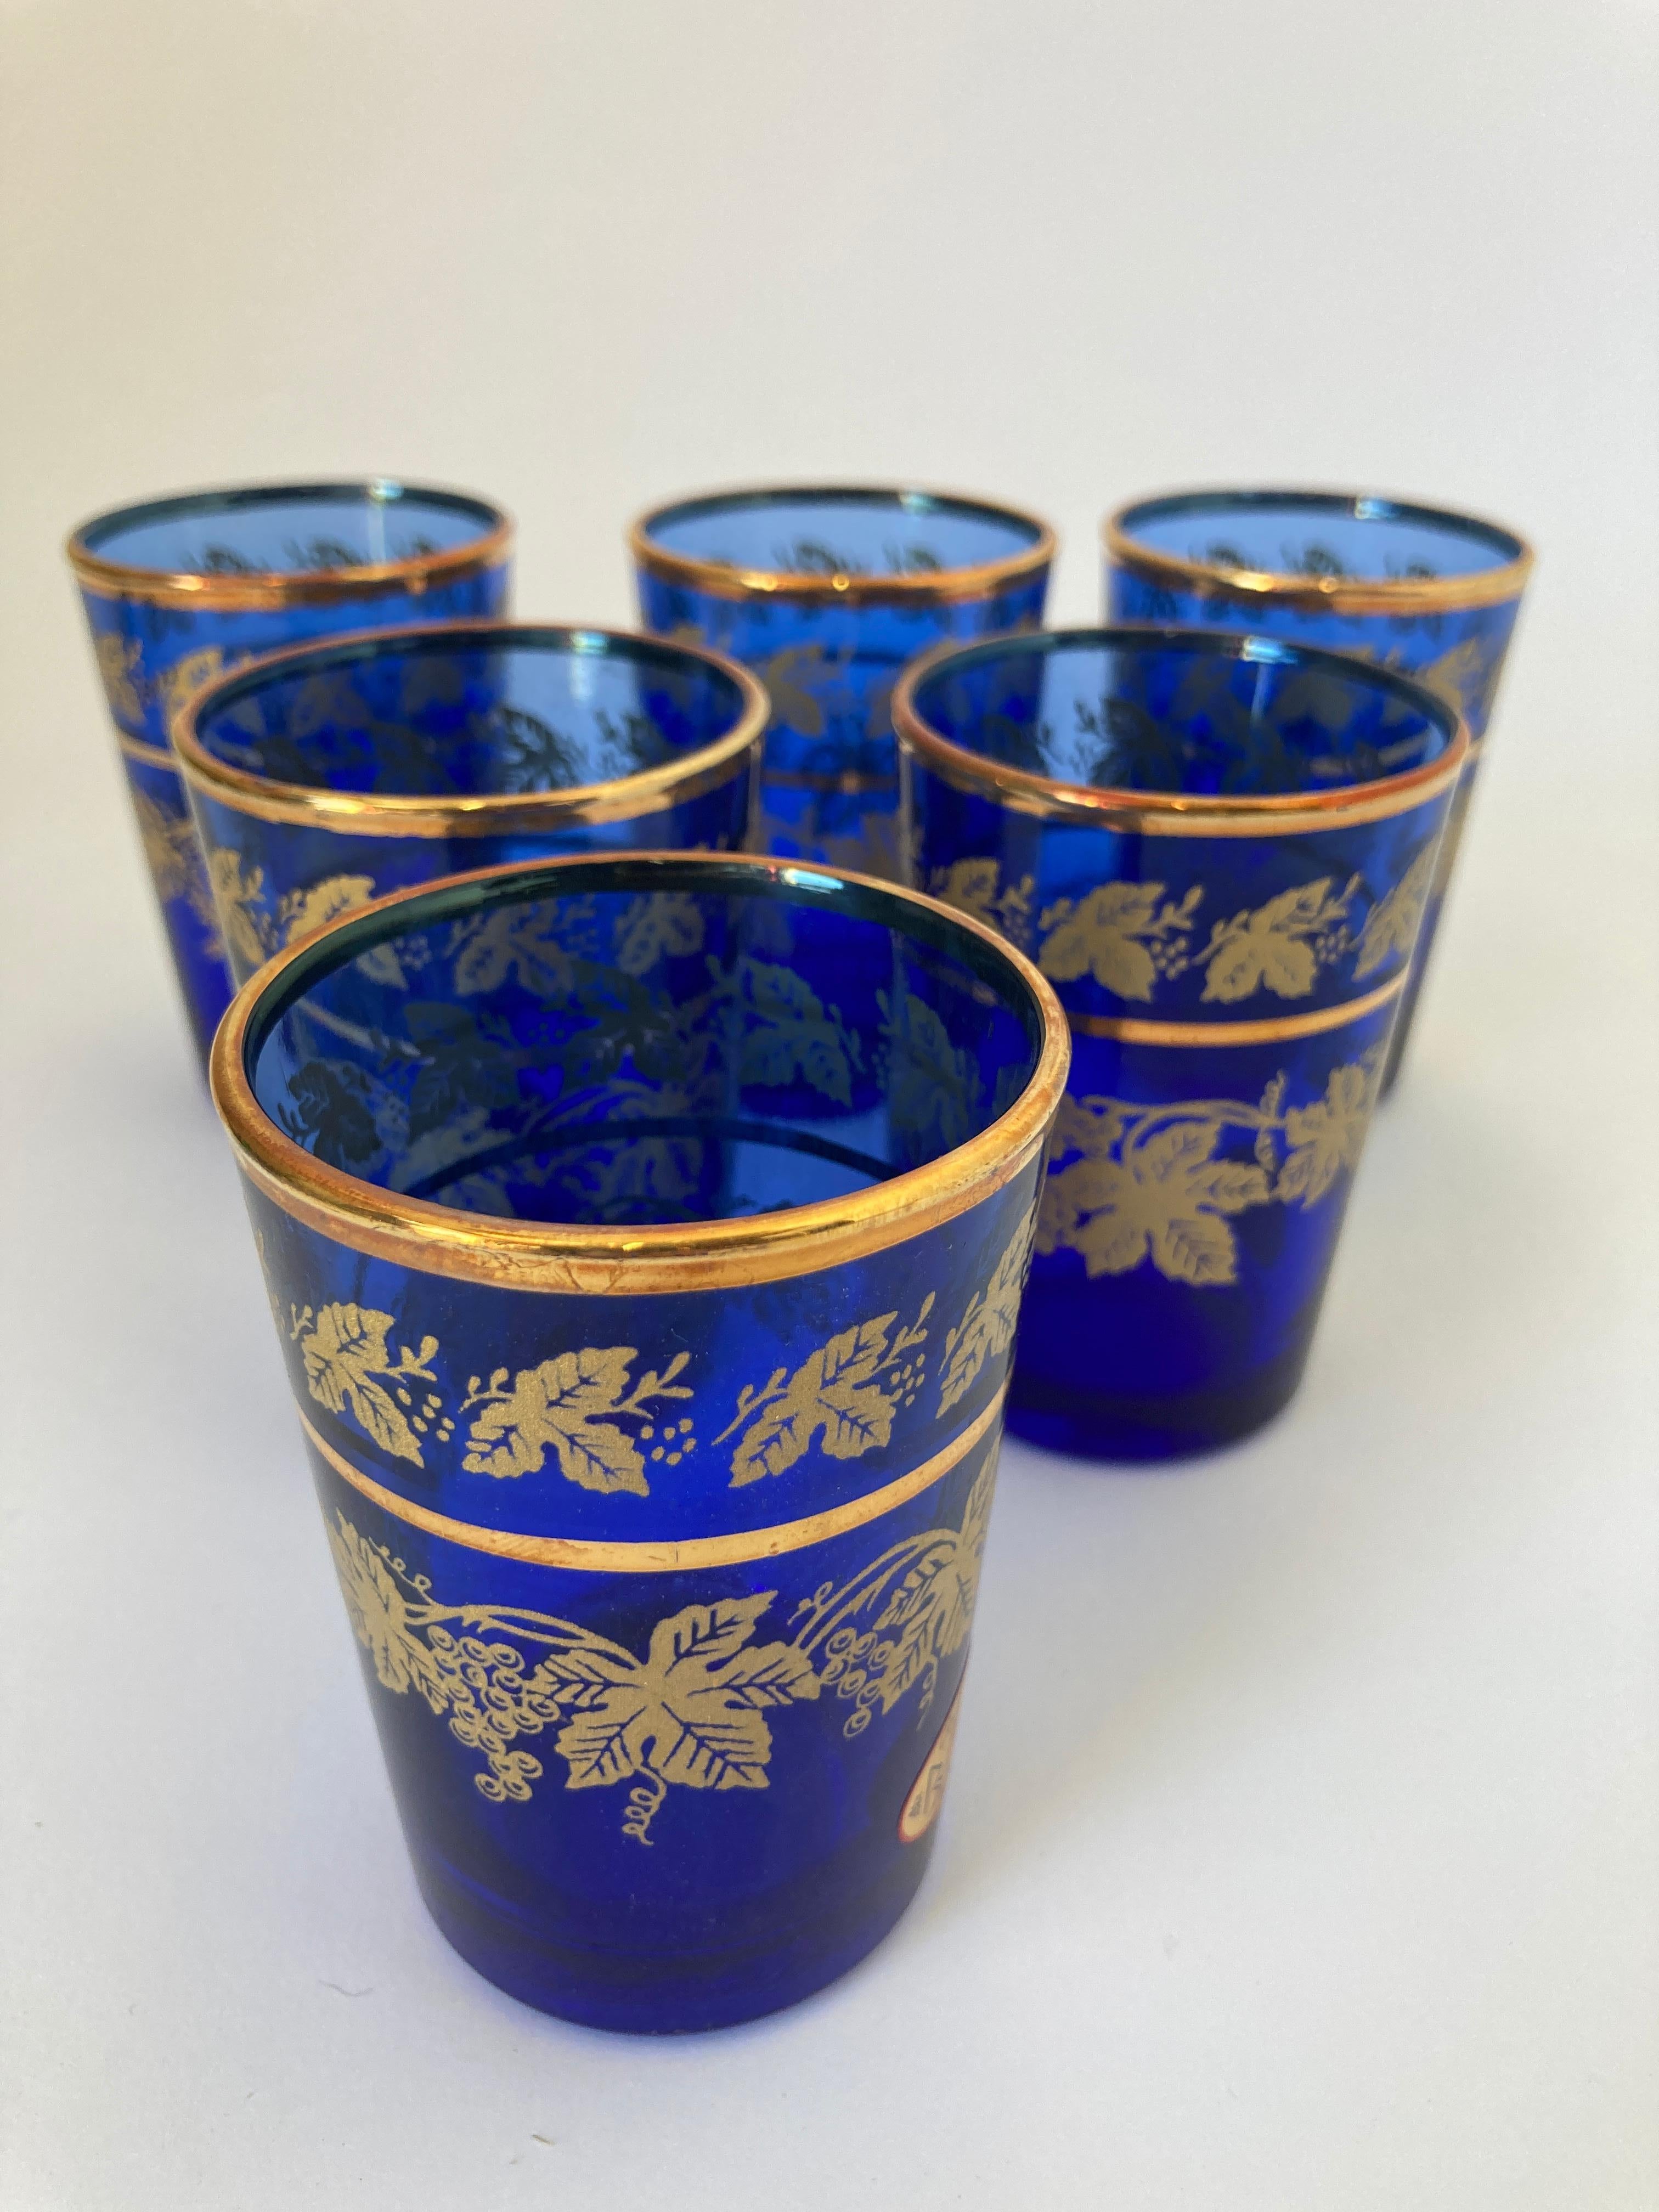 Ensemble de six verres mauresques bleu royal et or soufflés à la bouche.
Utilisez-les pour le thé marocain, ou toute autre boisson chaude ou froide.
Verres à liqueur très légers finement décorés d'une frise classique à motifs dorés. 
Utilisez ces